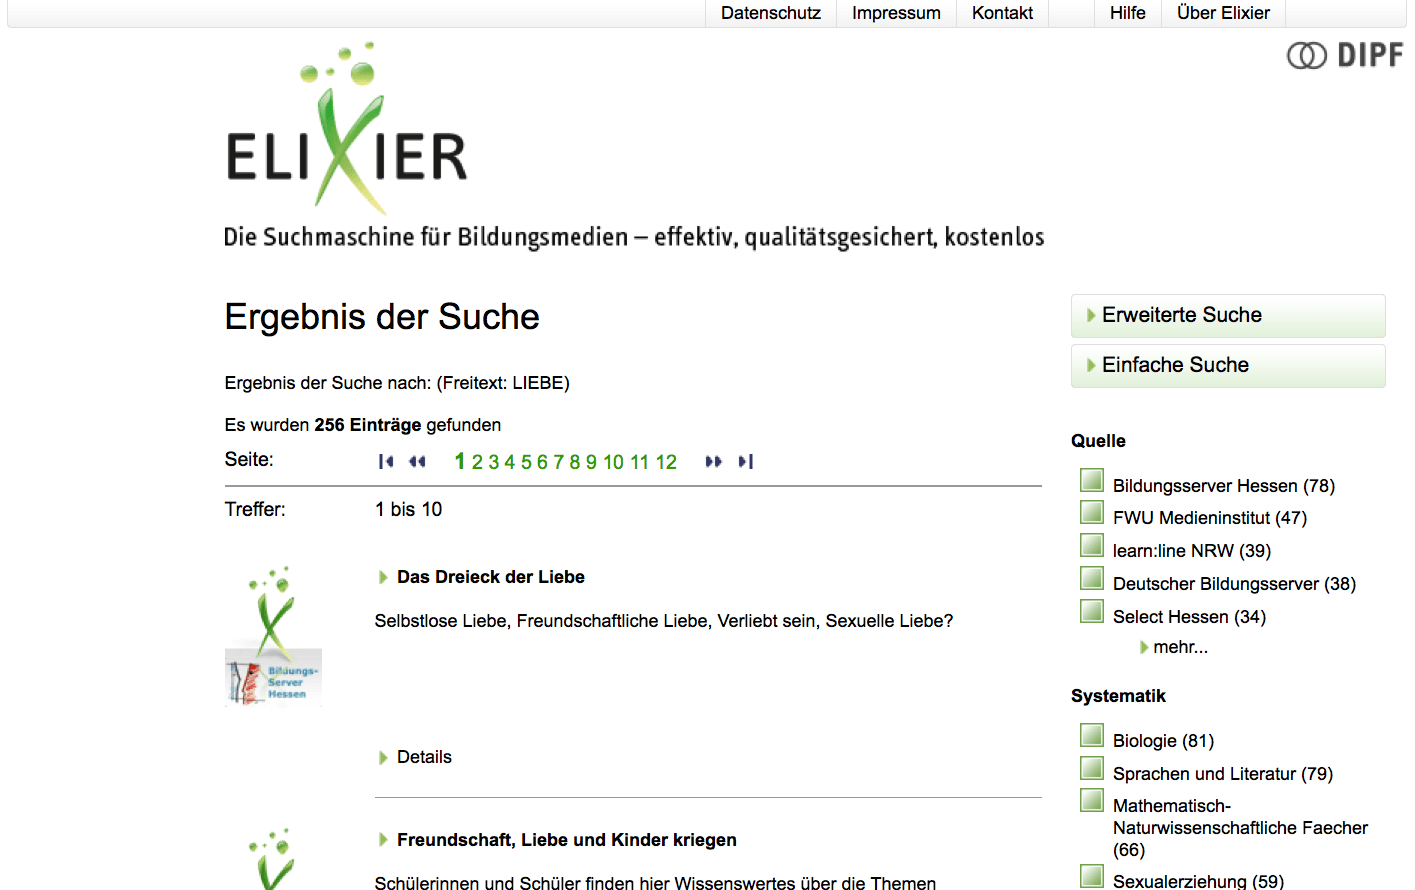 Screenshot von bildungsserver.de/elixier (nicht unter freier Lizenz)